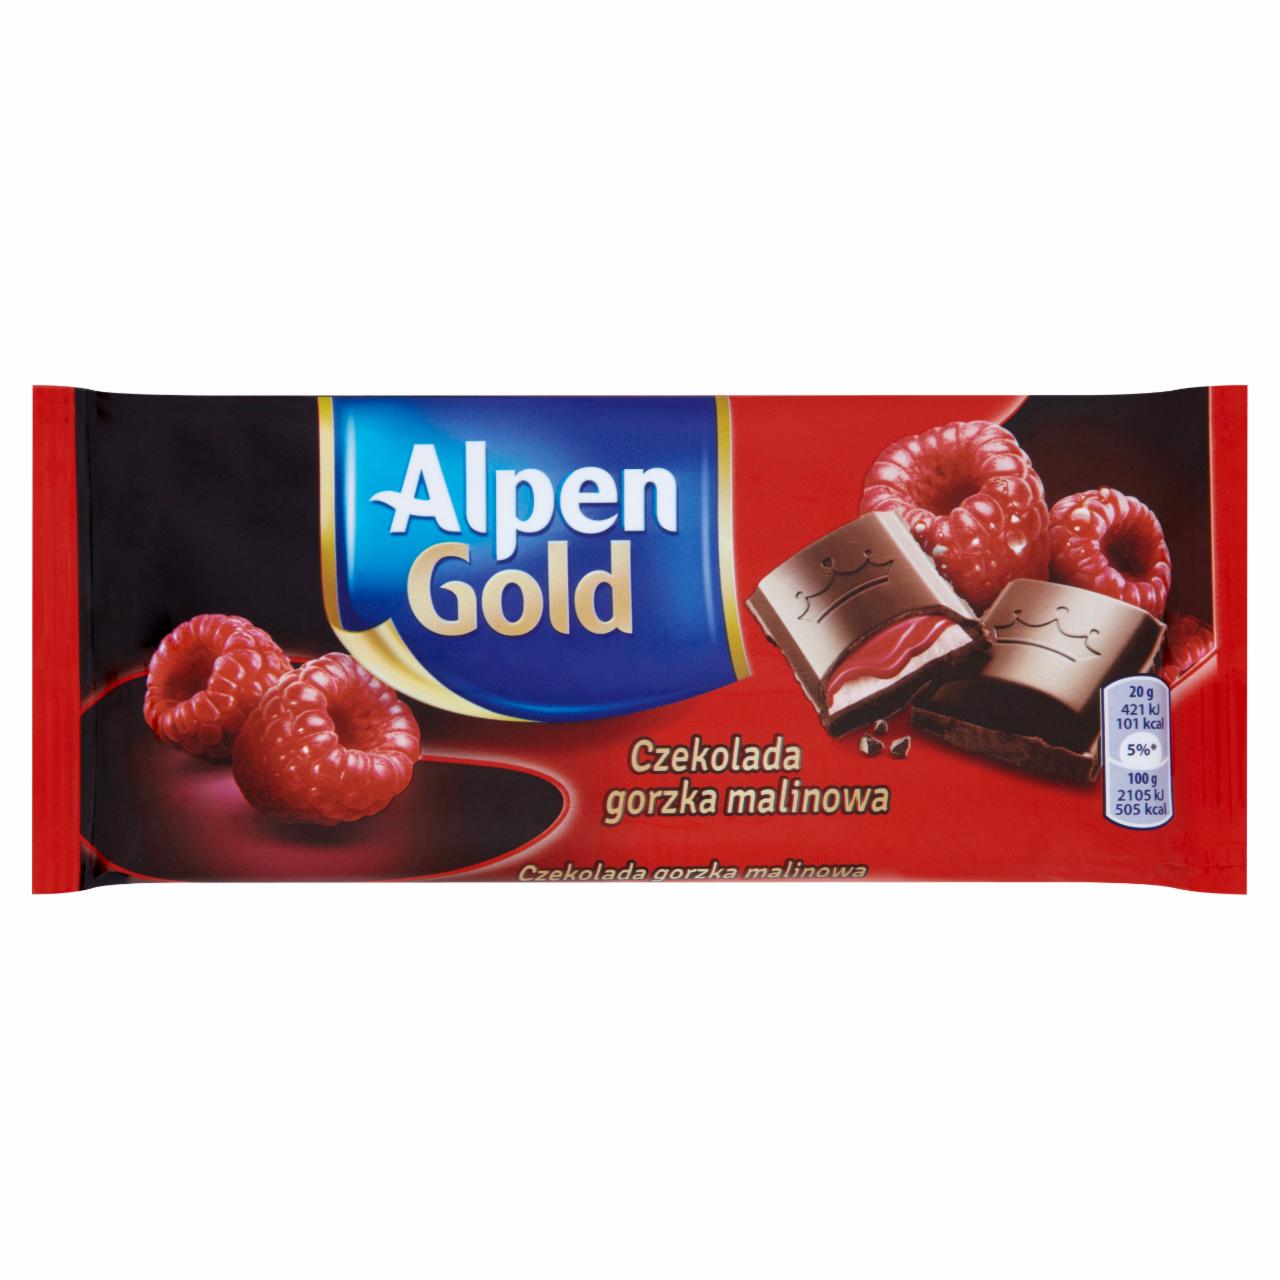 Zdjęcia - Alpen Gold Czekolada gorzka malinowa 100 g